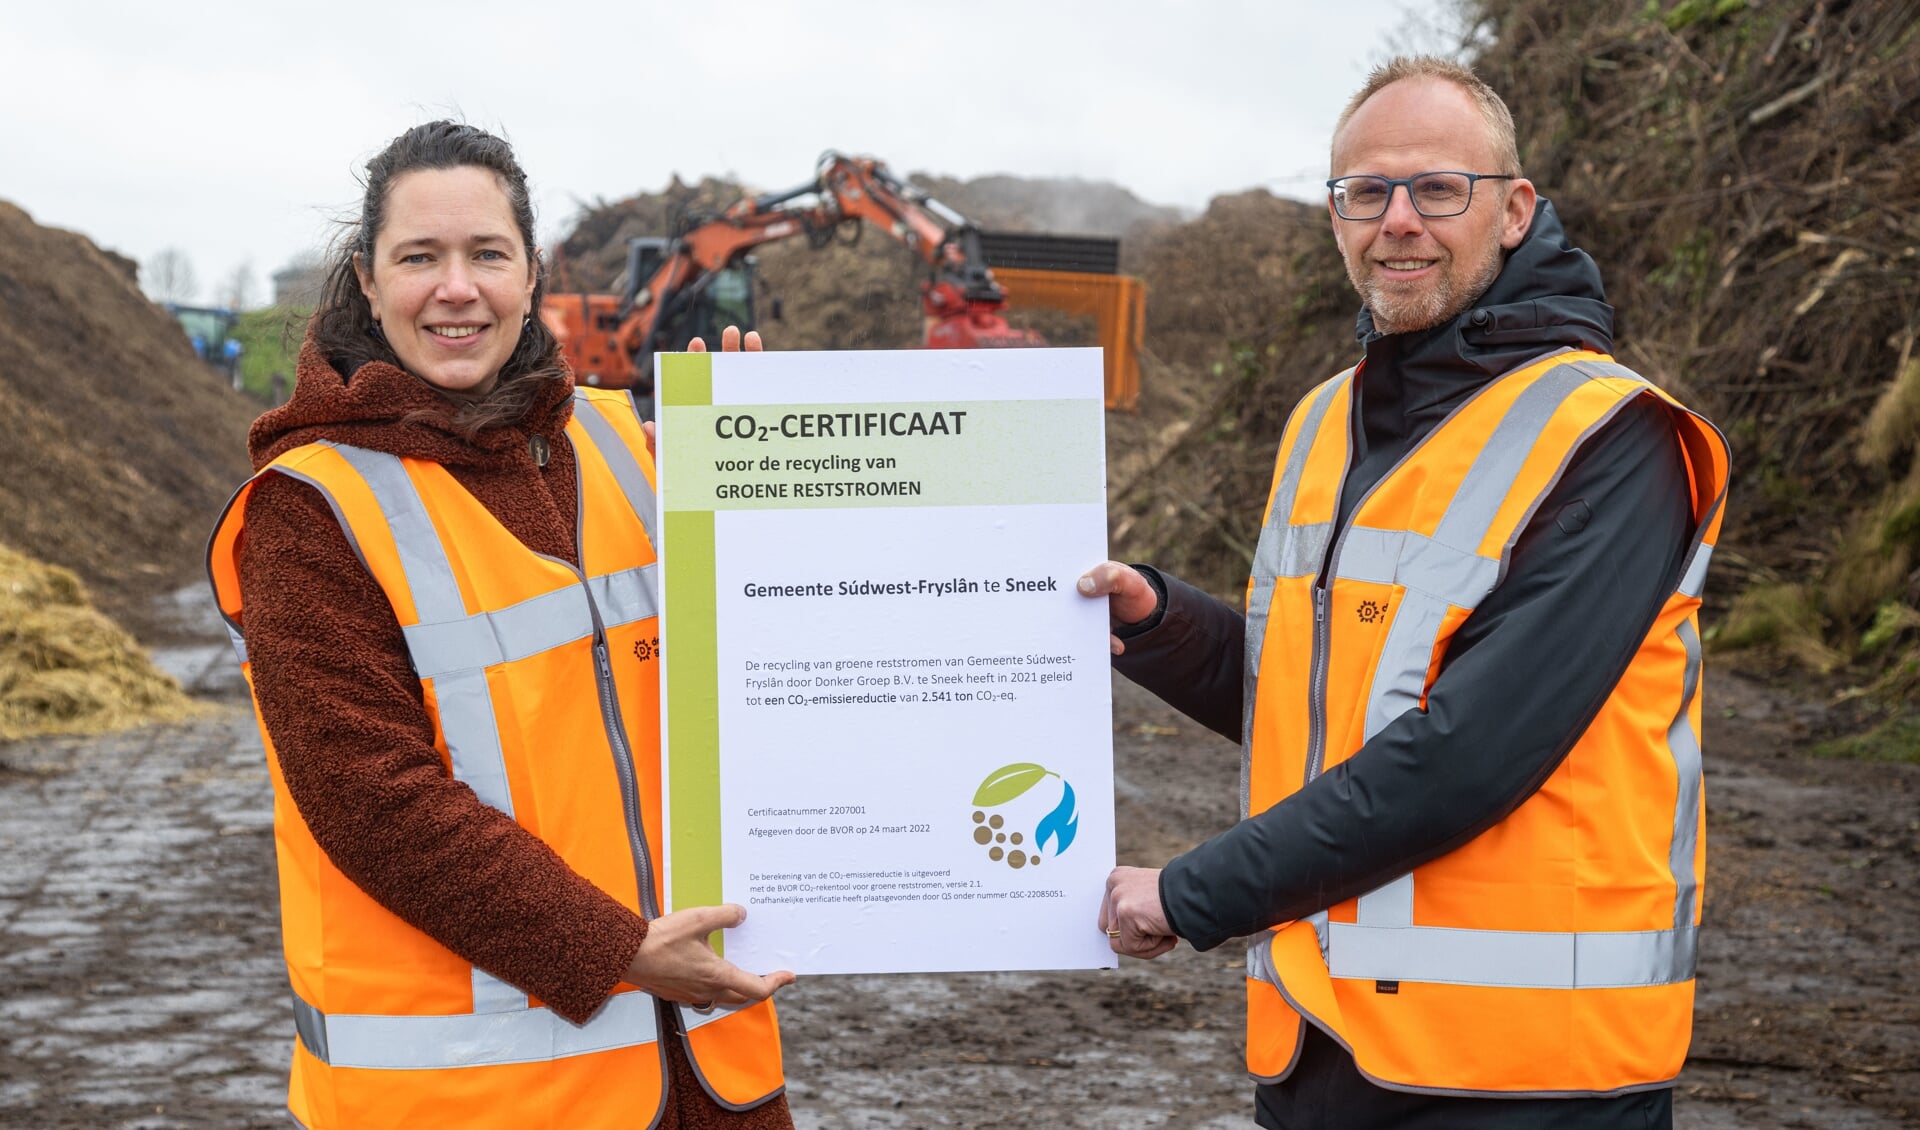 Esther Wierda-Kruiper (manager duurzaamheid en circulariteit) van Donker Substrates reikt het allereerste CO2-certificaat voor de recycling van groene reststromen uit aan Hein Quarré (manager Schoon) van de gemeente Súdwest-Fryslân. 